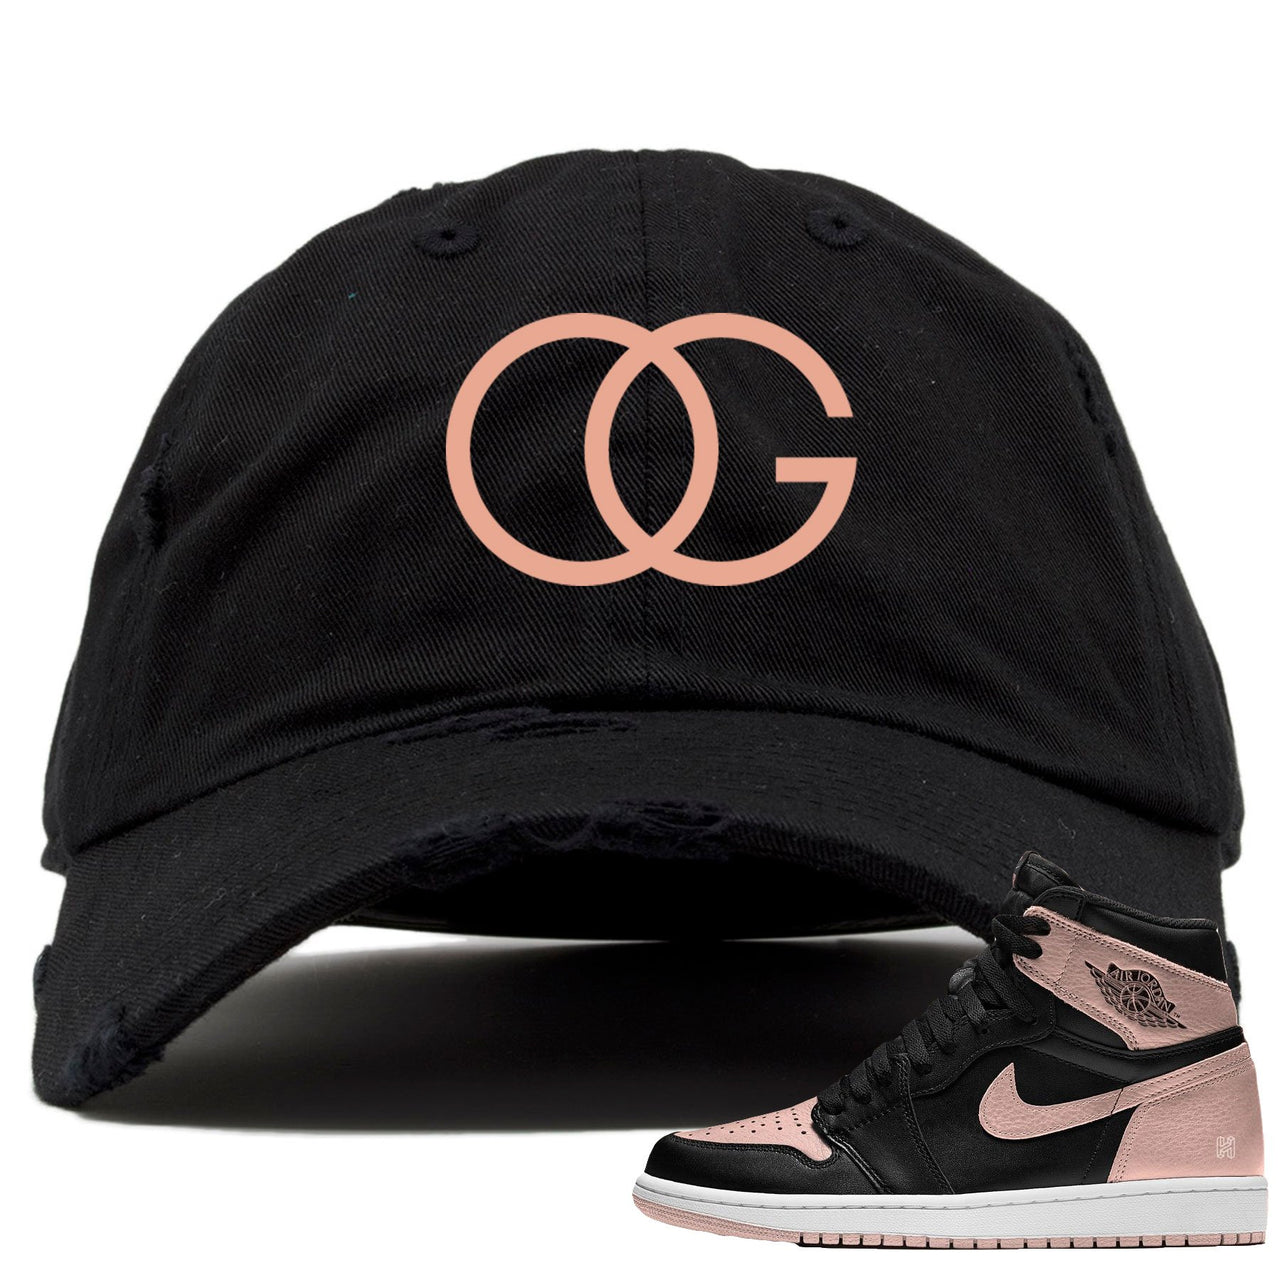 Black OG hat to match Crimson Tint Jordan 1 shoes